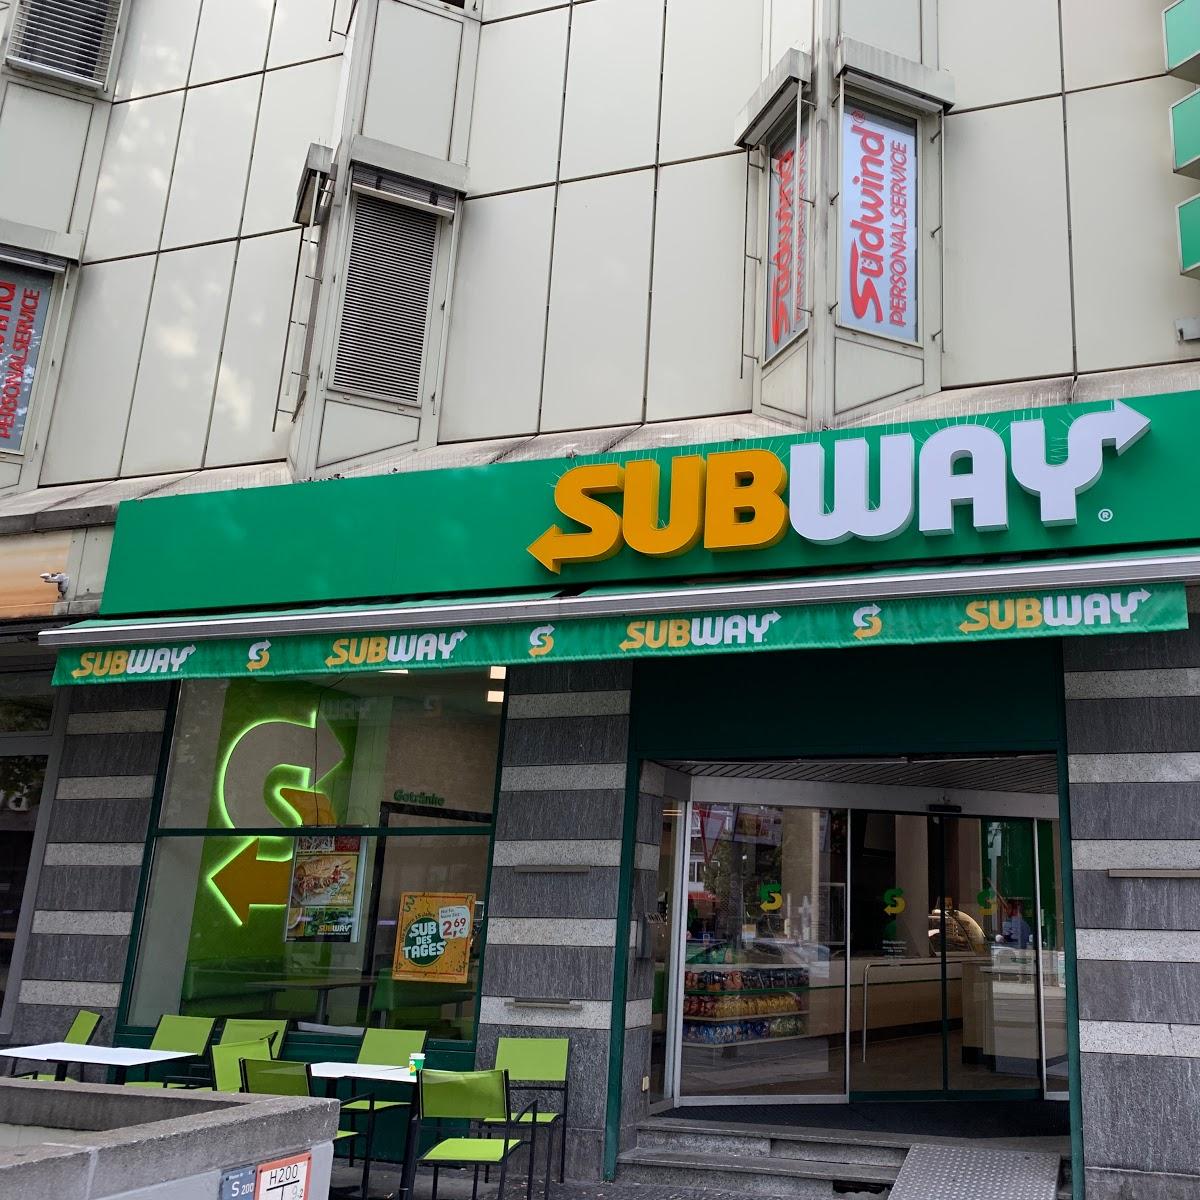 Restaurant "Subway" in Stuttgart